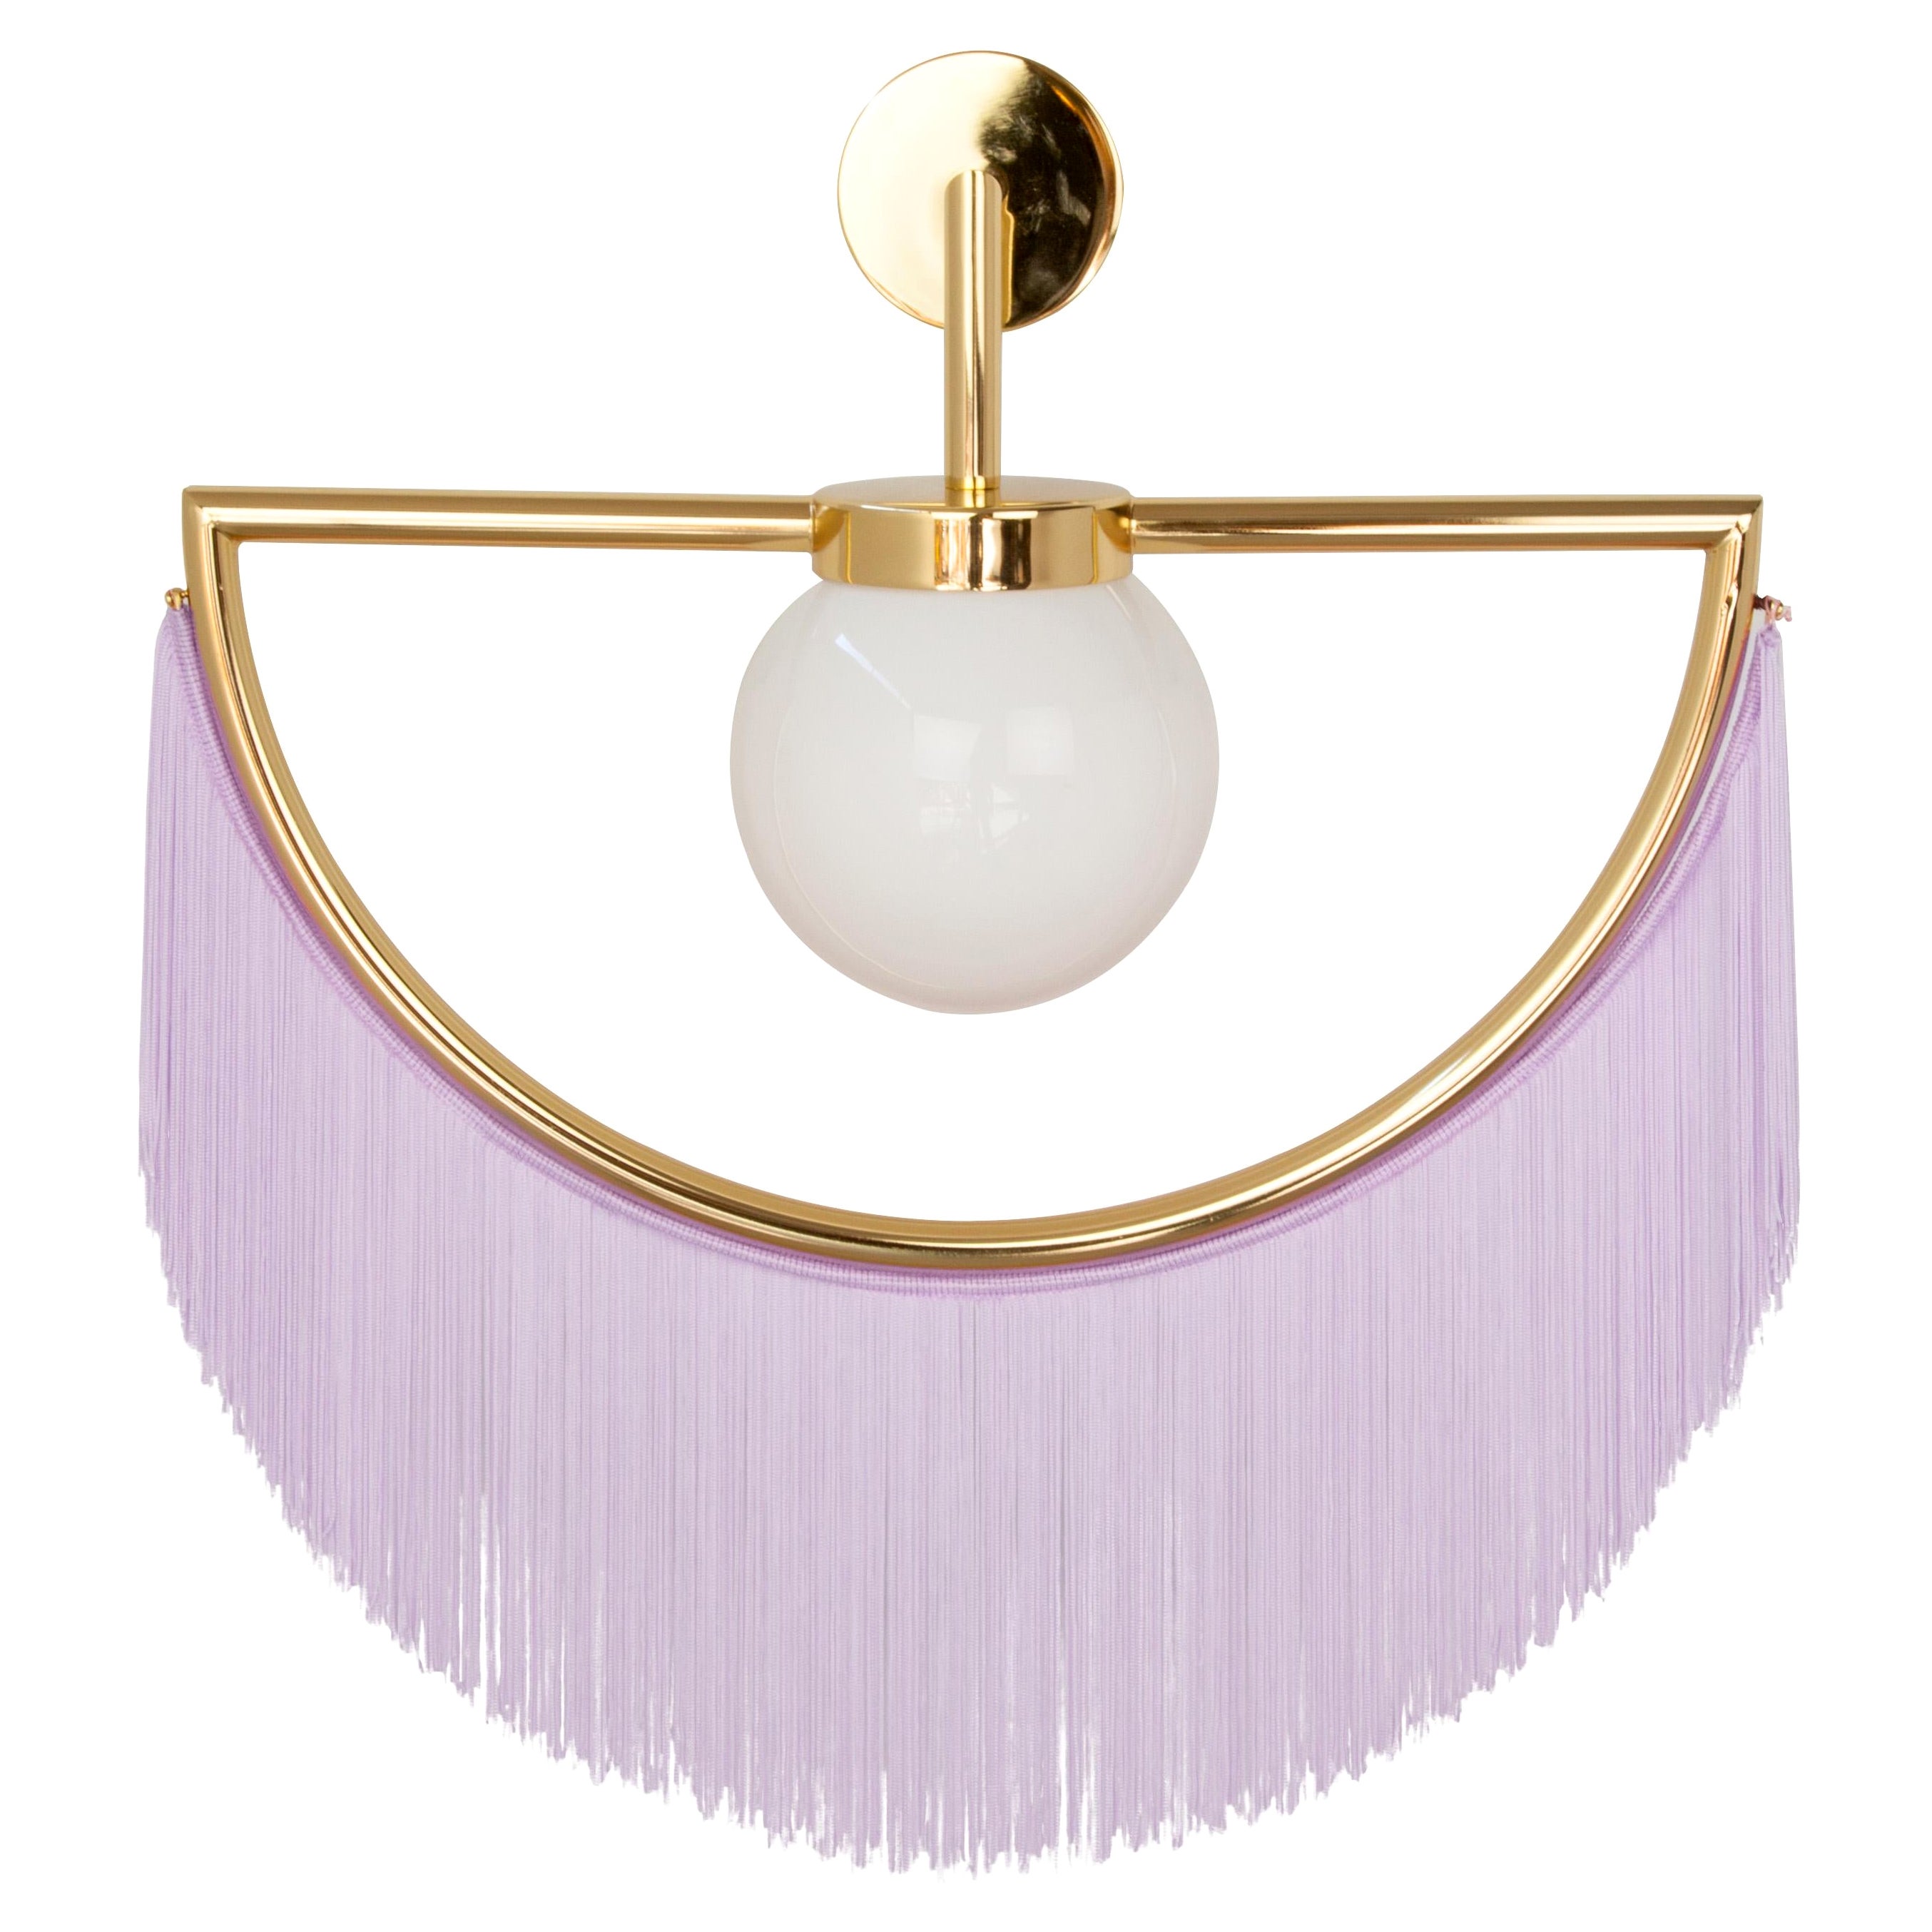 Wink Wall Lamp by Houtique, Light Purple